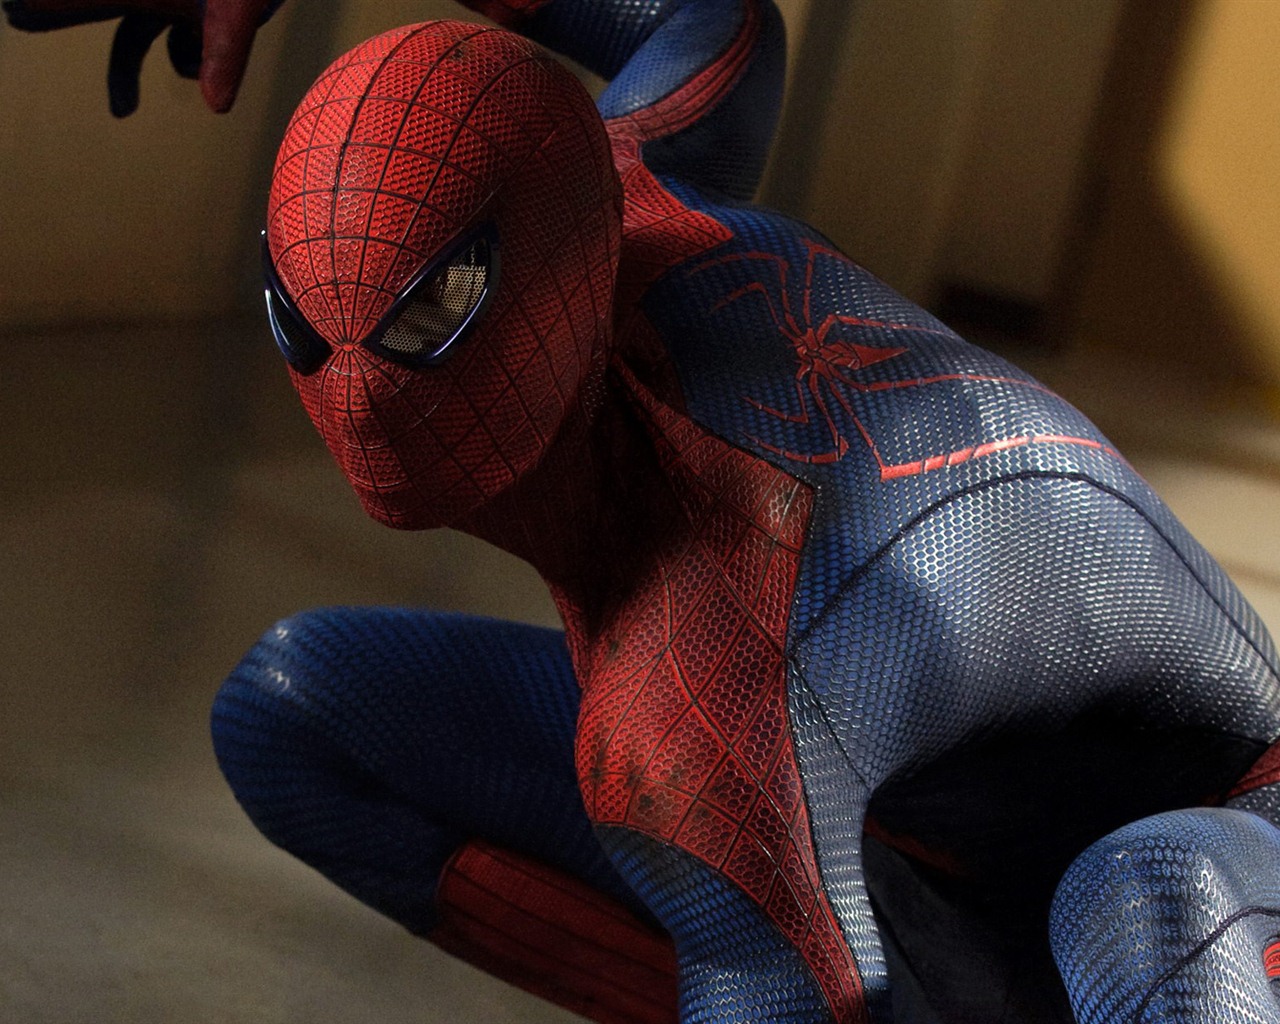 The Amazing Spider-Man 2012 惊奇蜘蛛侠2012 壁纸专辑3 - 1280x1024